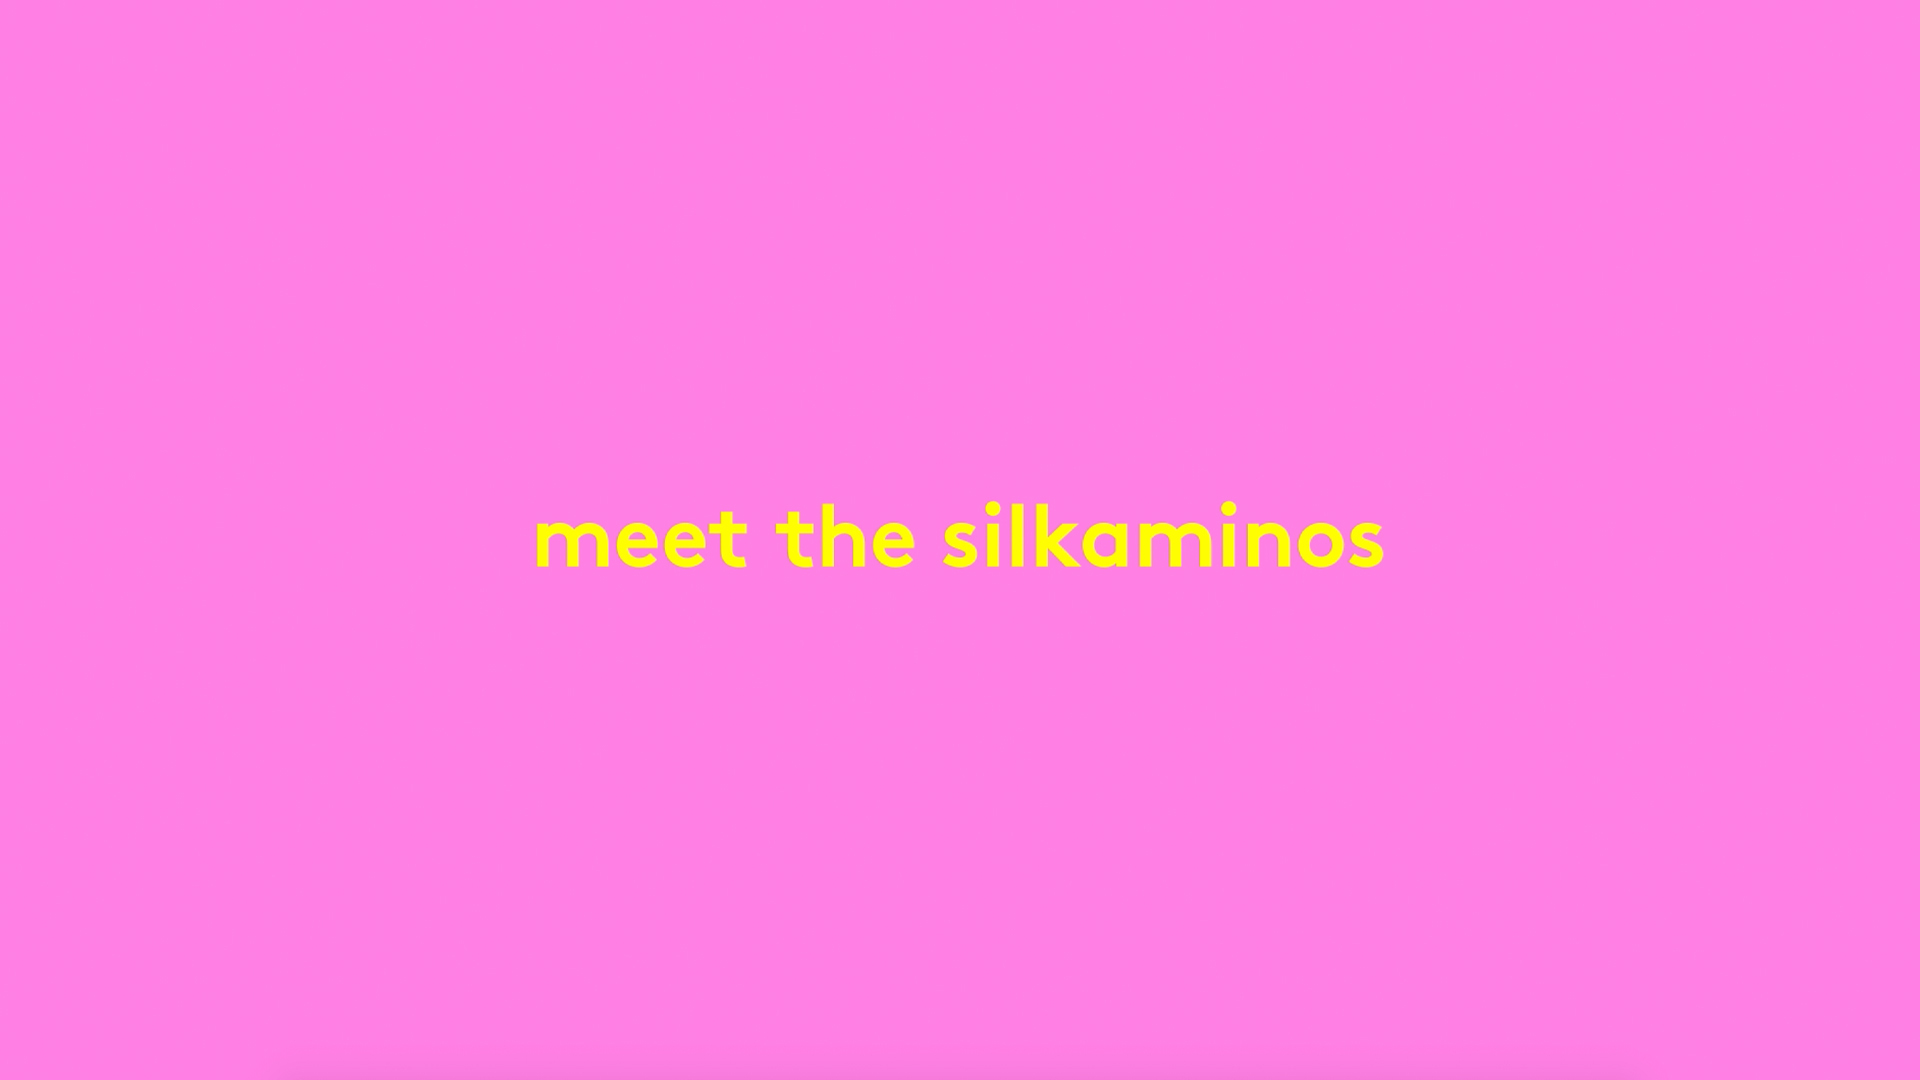 Vidéo expliquant comment suivre une routine Silkamino avec le shampoing, le masque et le lait sans rinçage